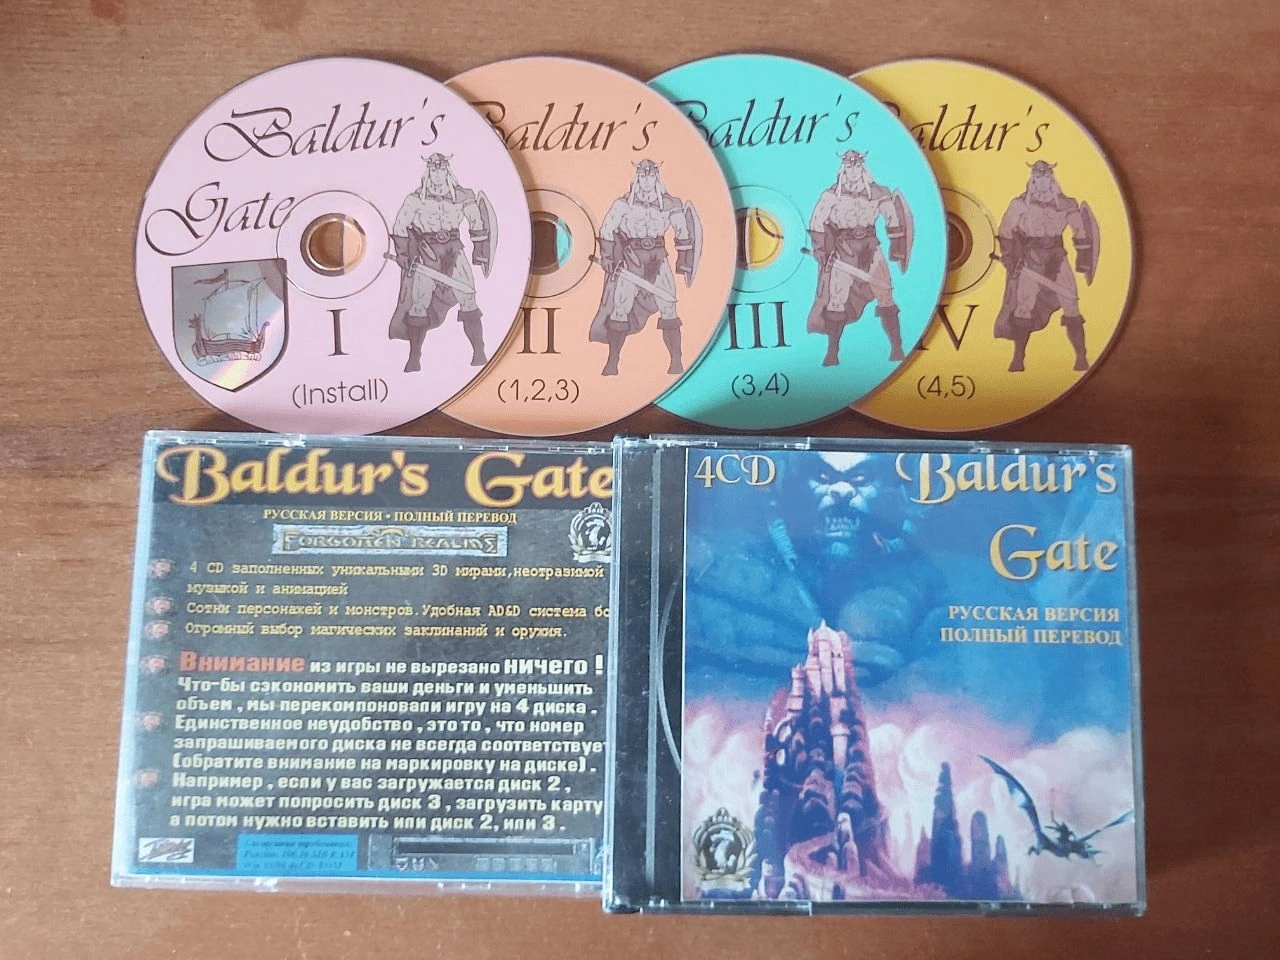 [Baldur’s Gate] Самое распространённое пиратское издание на 4 дисках.